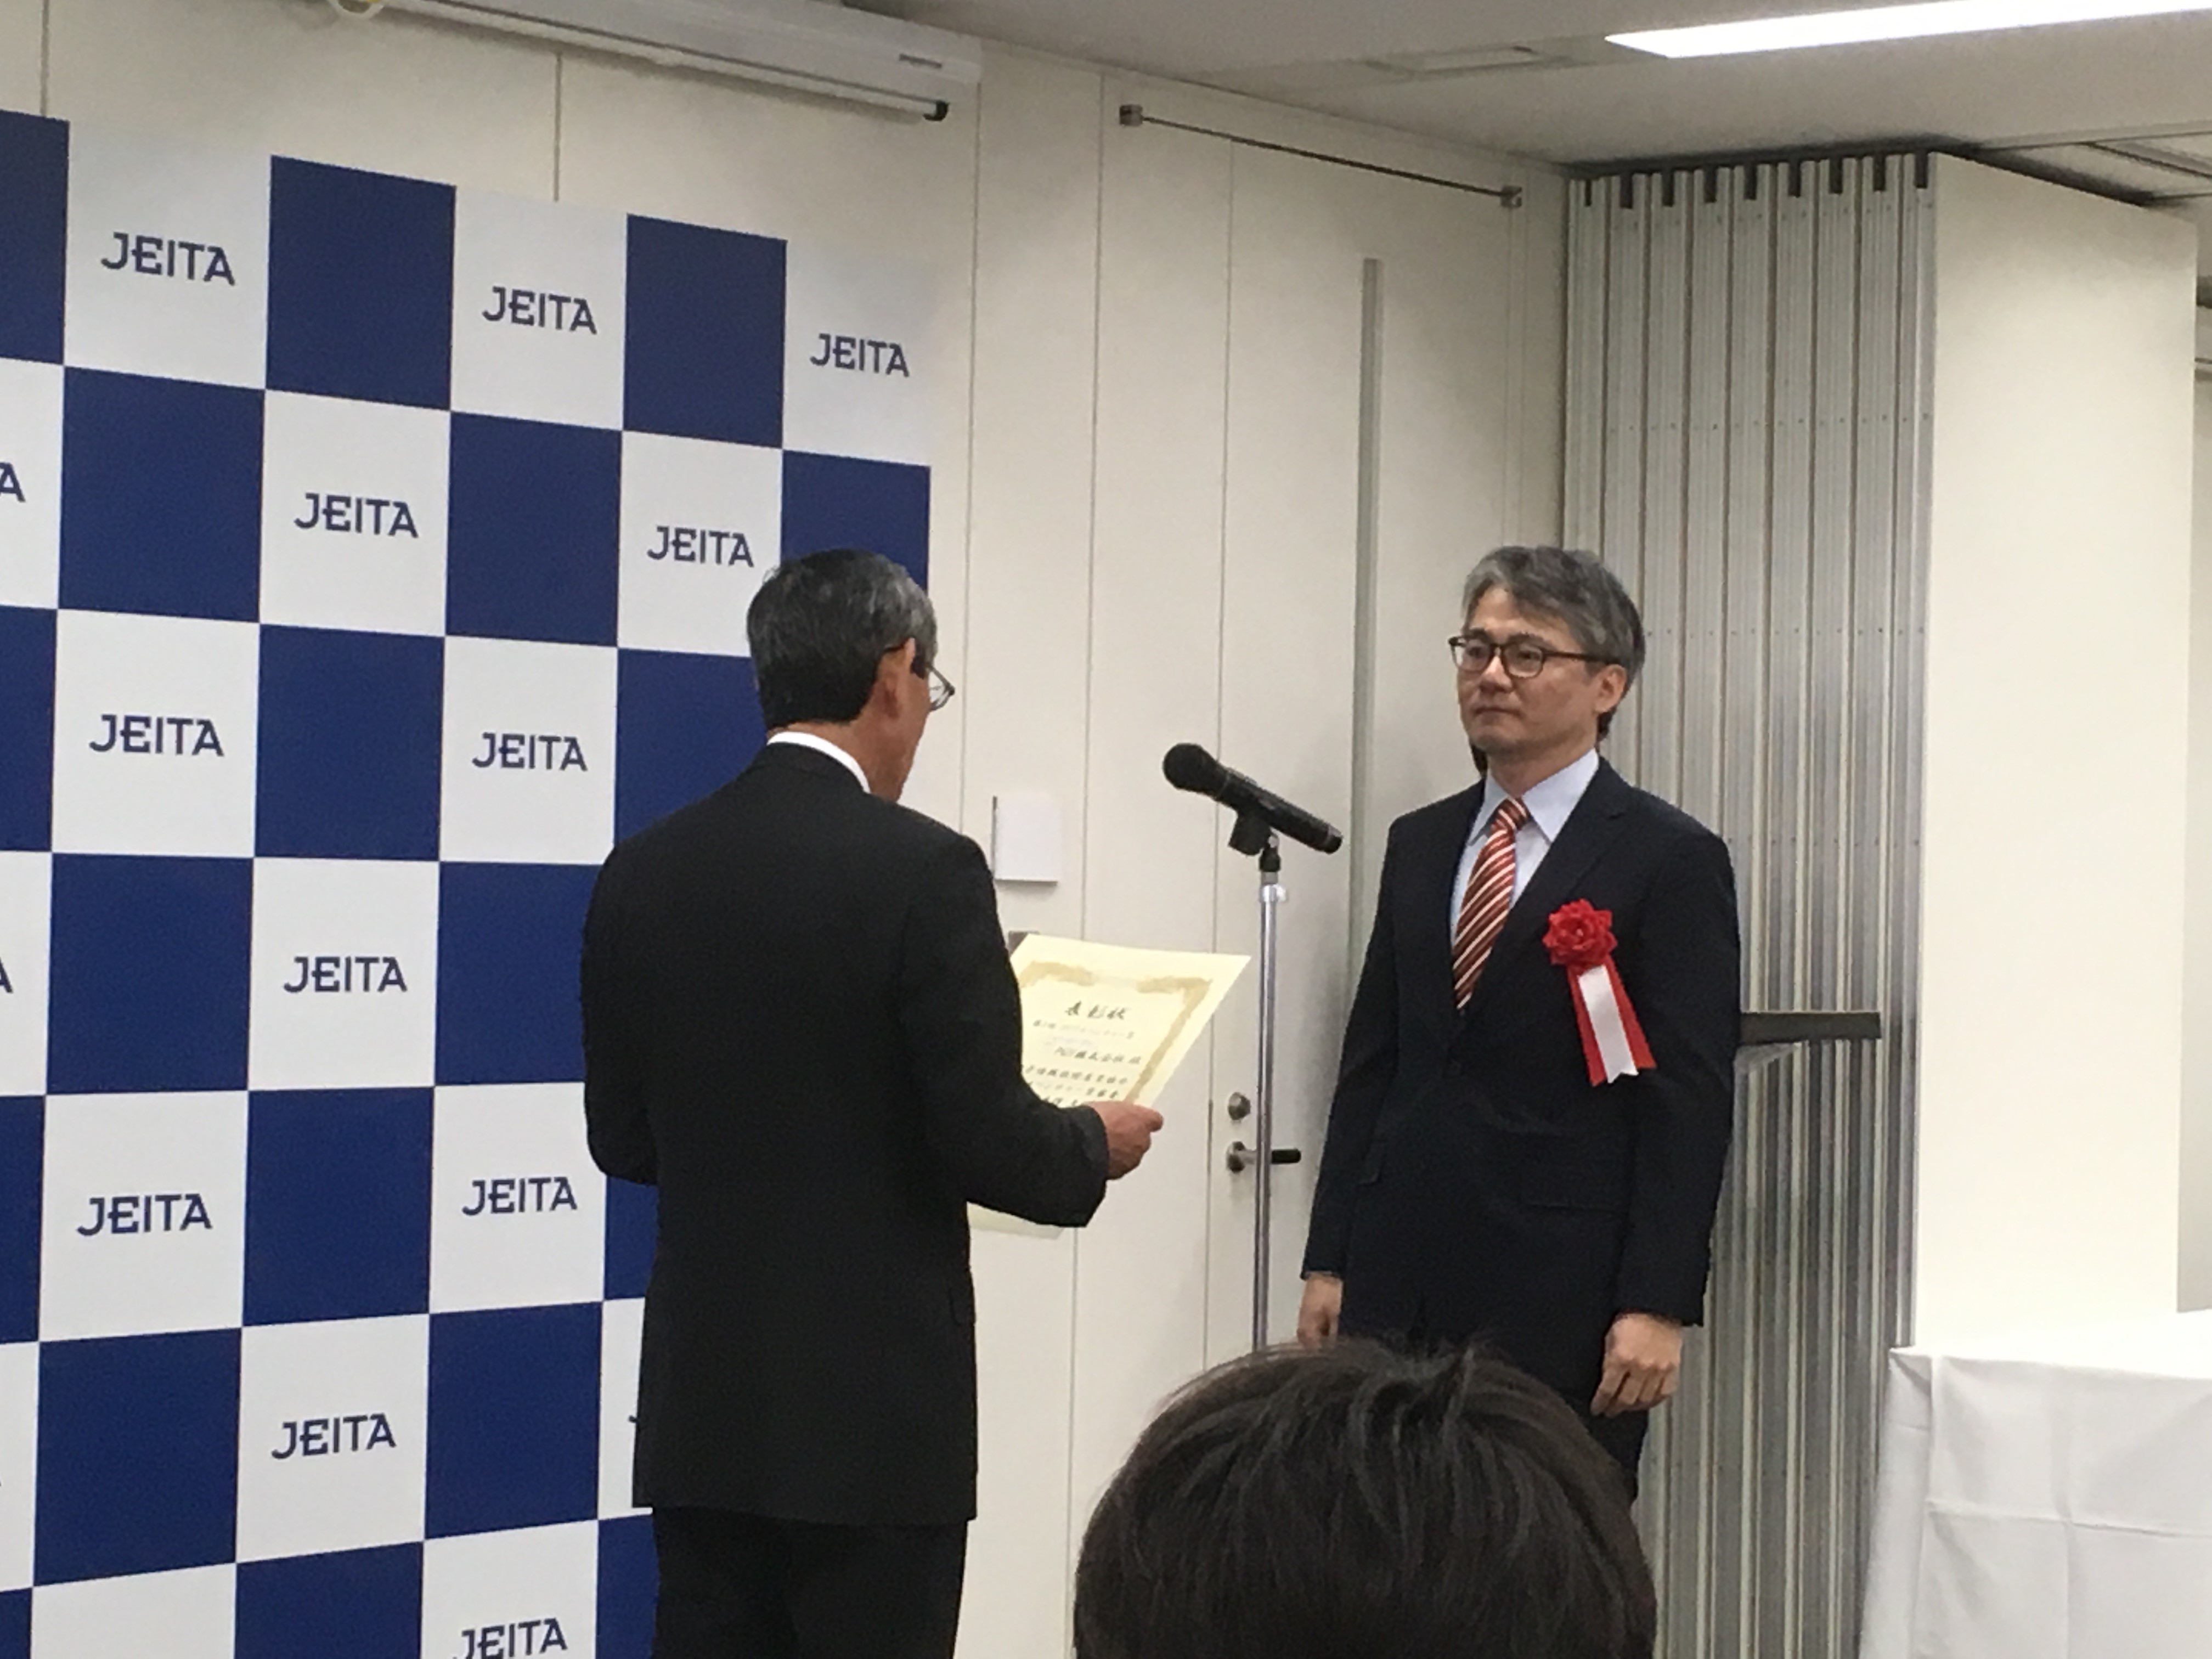 阪大発ベンチャー「PGV株式会社」が「JEITAベンチャー賞」を受賞しました